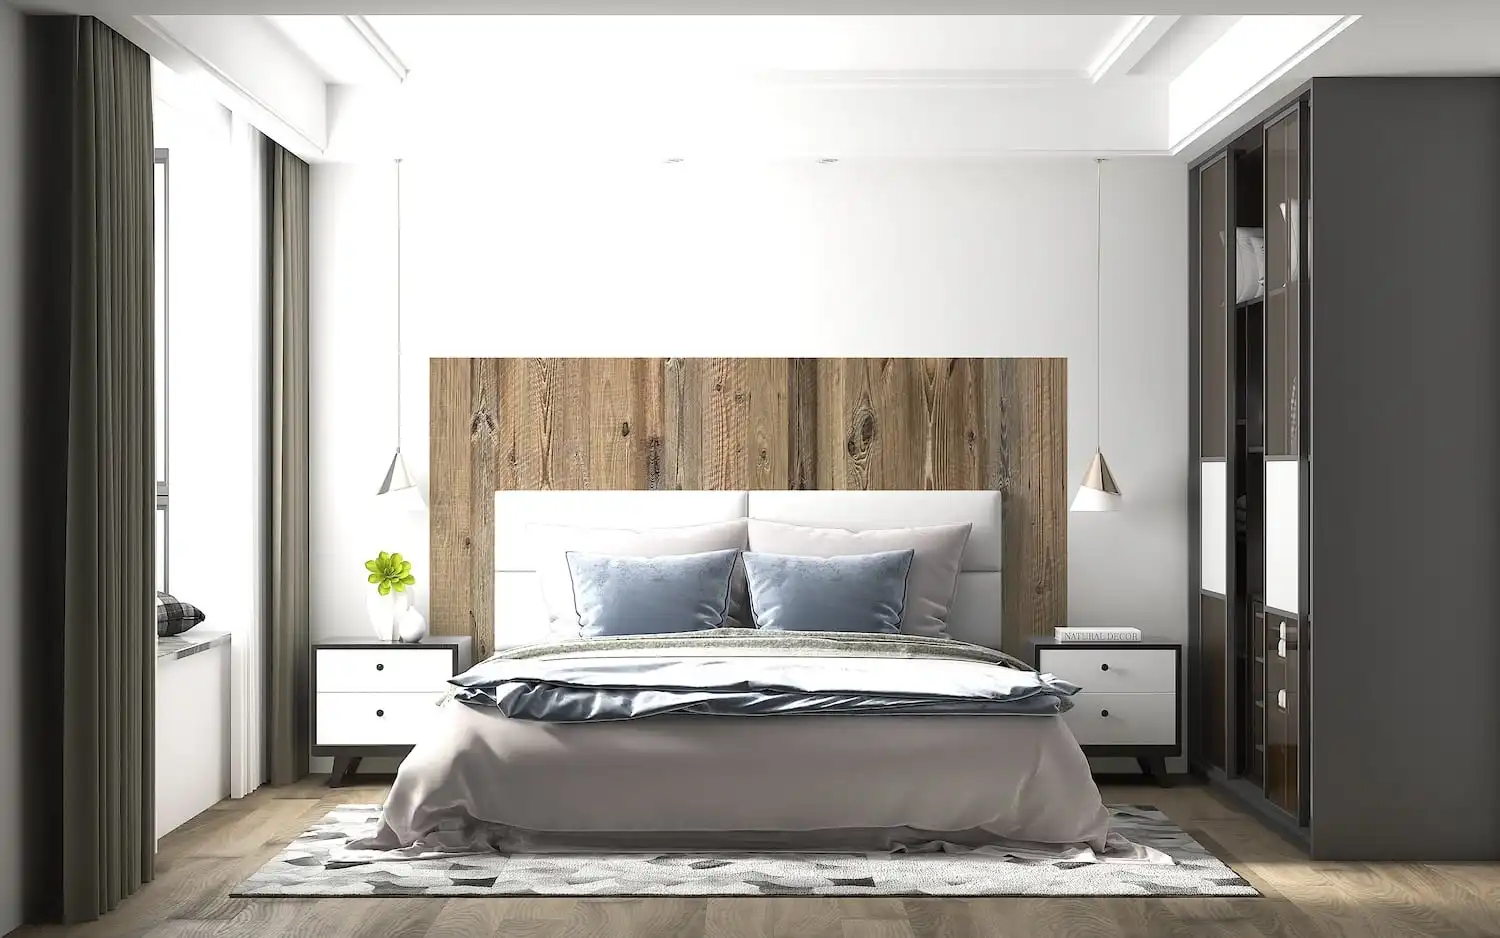 Chambre moderne avec un grand lit, une tête de lit rustique en bois et des tables de chevet assorties.